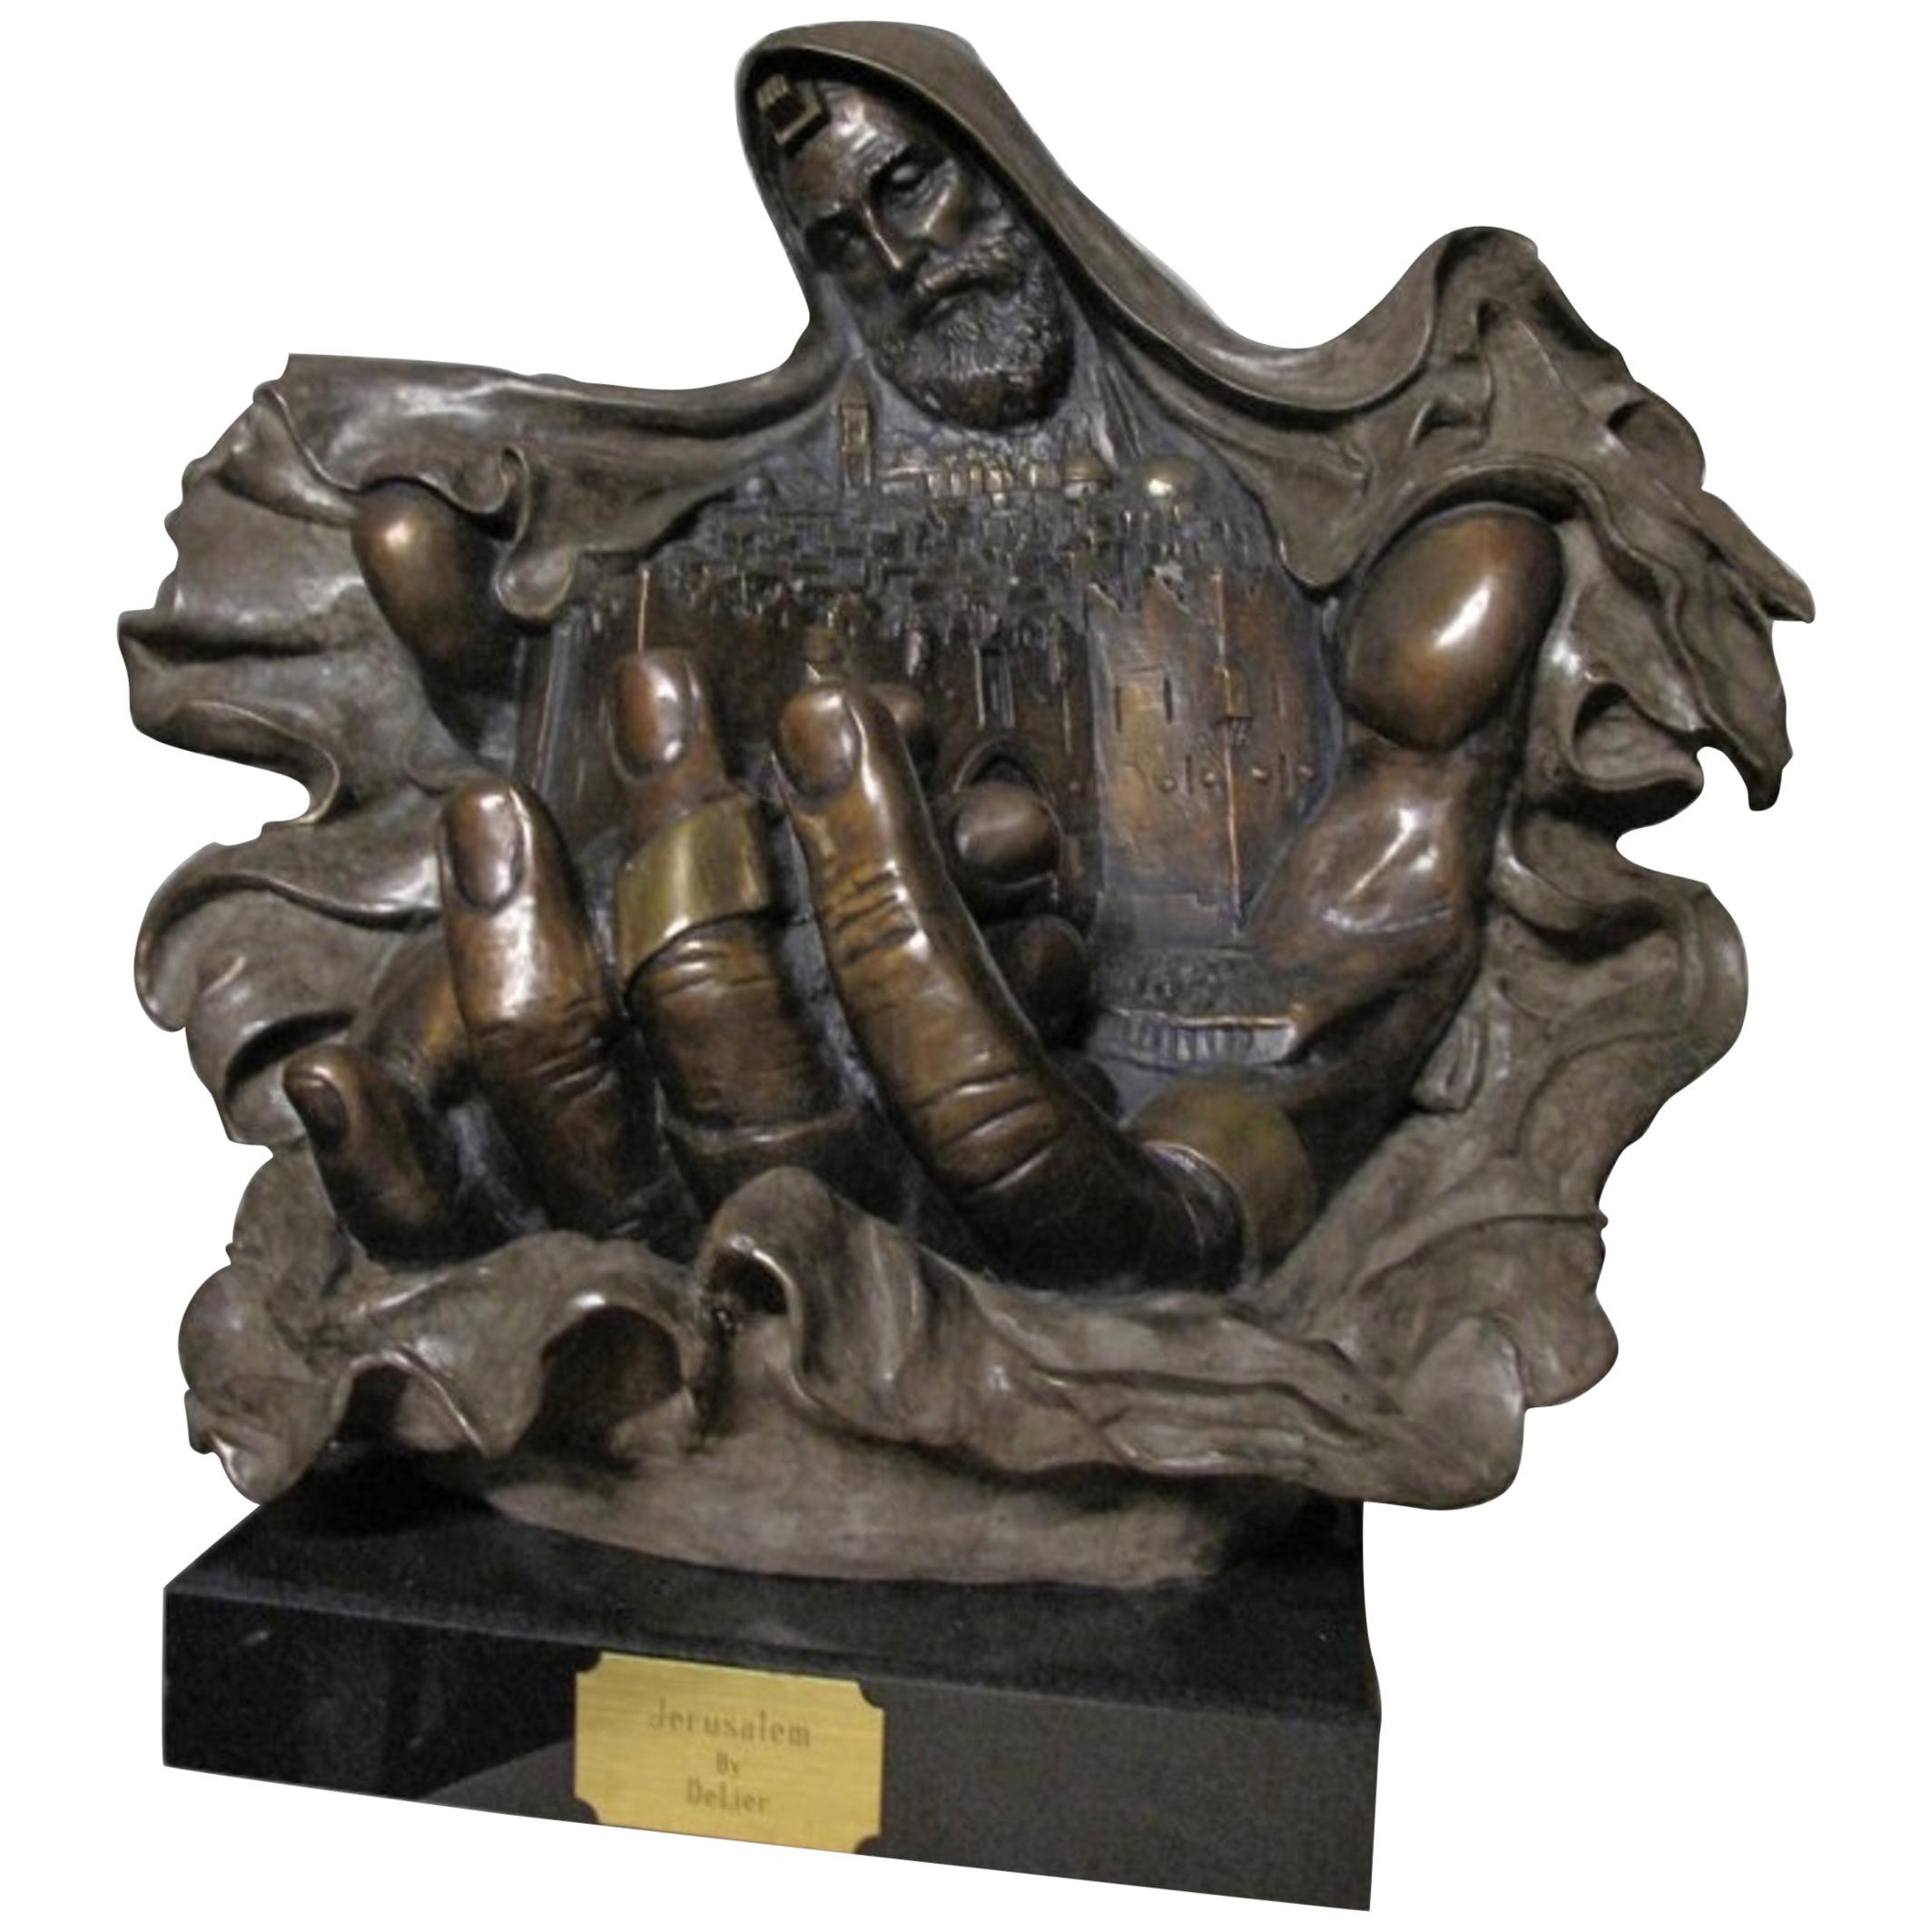 Sculpture en bronze patiné "Jerusalem" de Delier